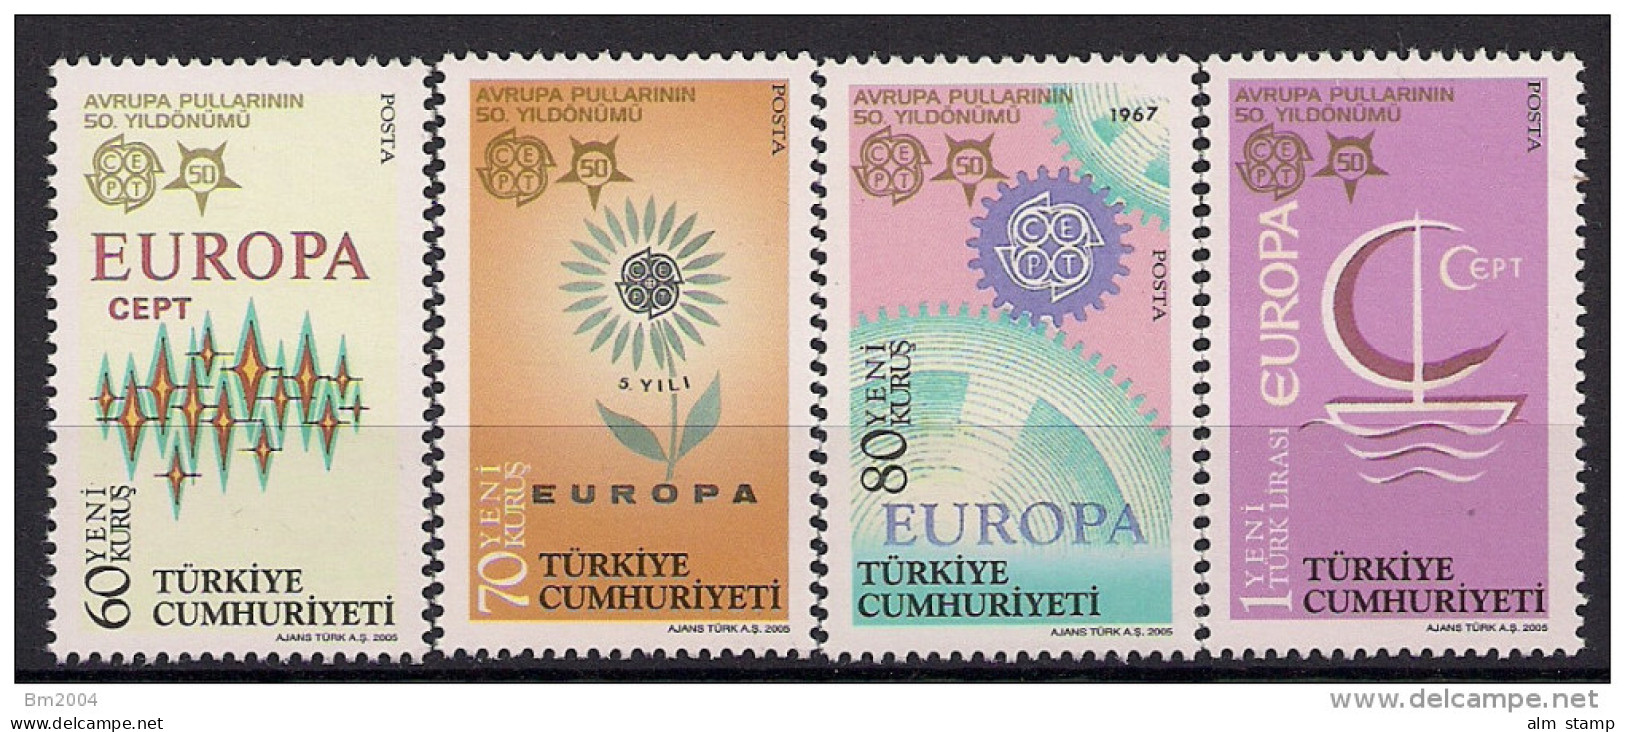 2005 Türkei Türkiye  Mi 3487-0 **MNH  50 Jahre Europamarken - Unused Stamps